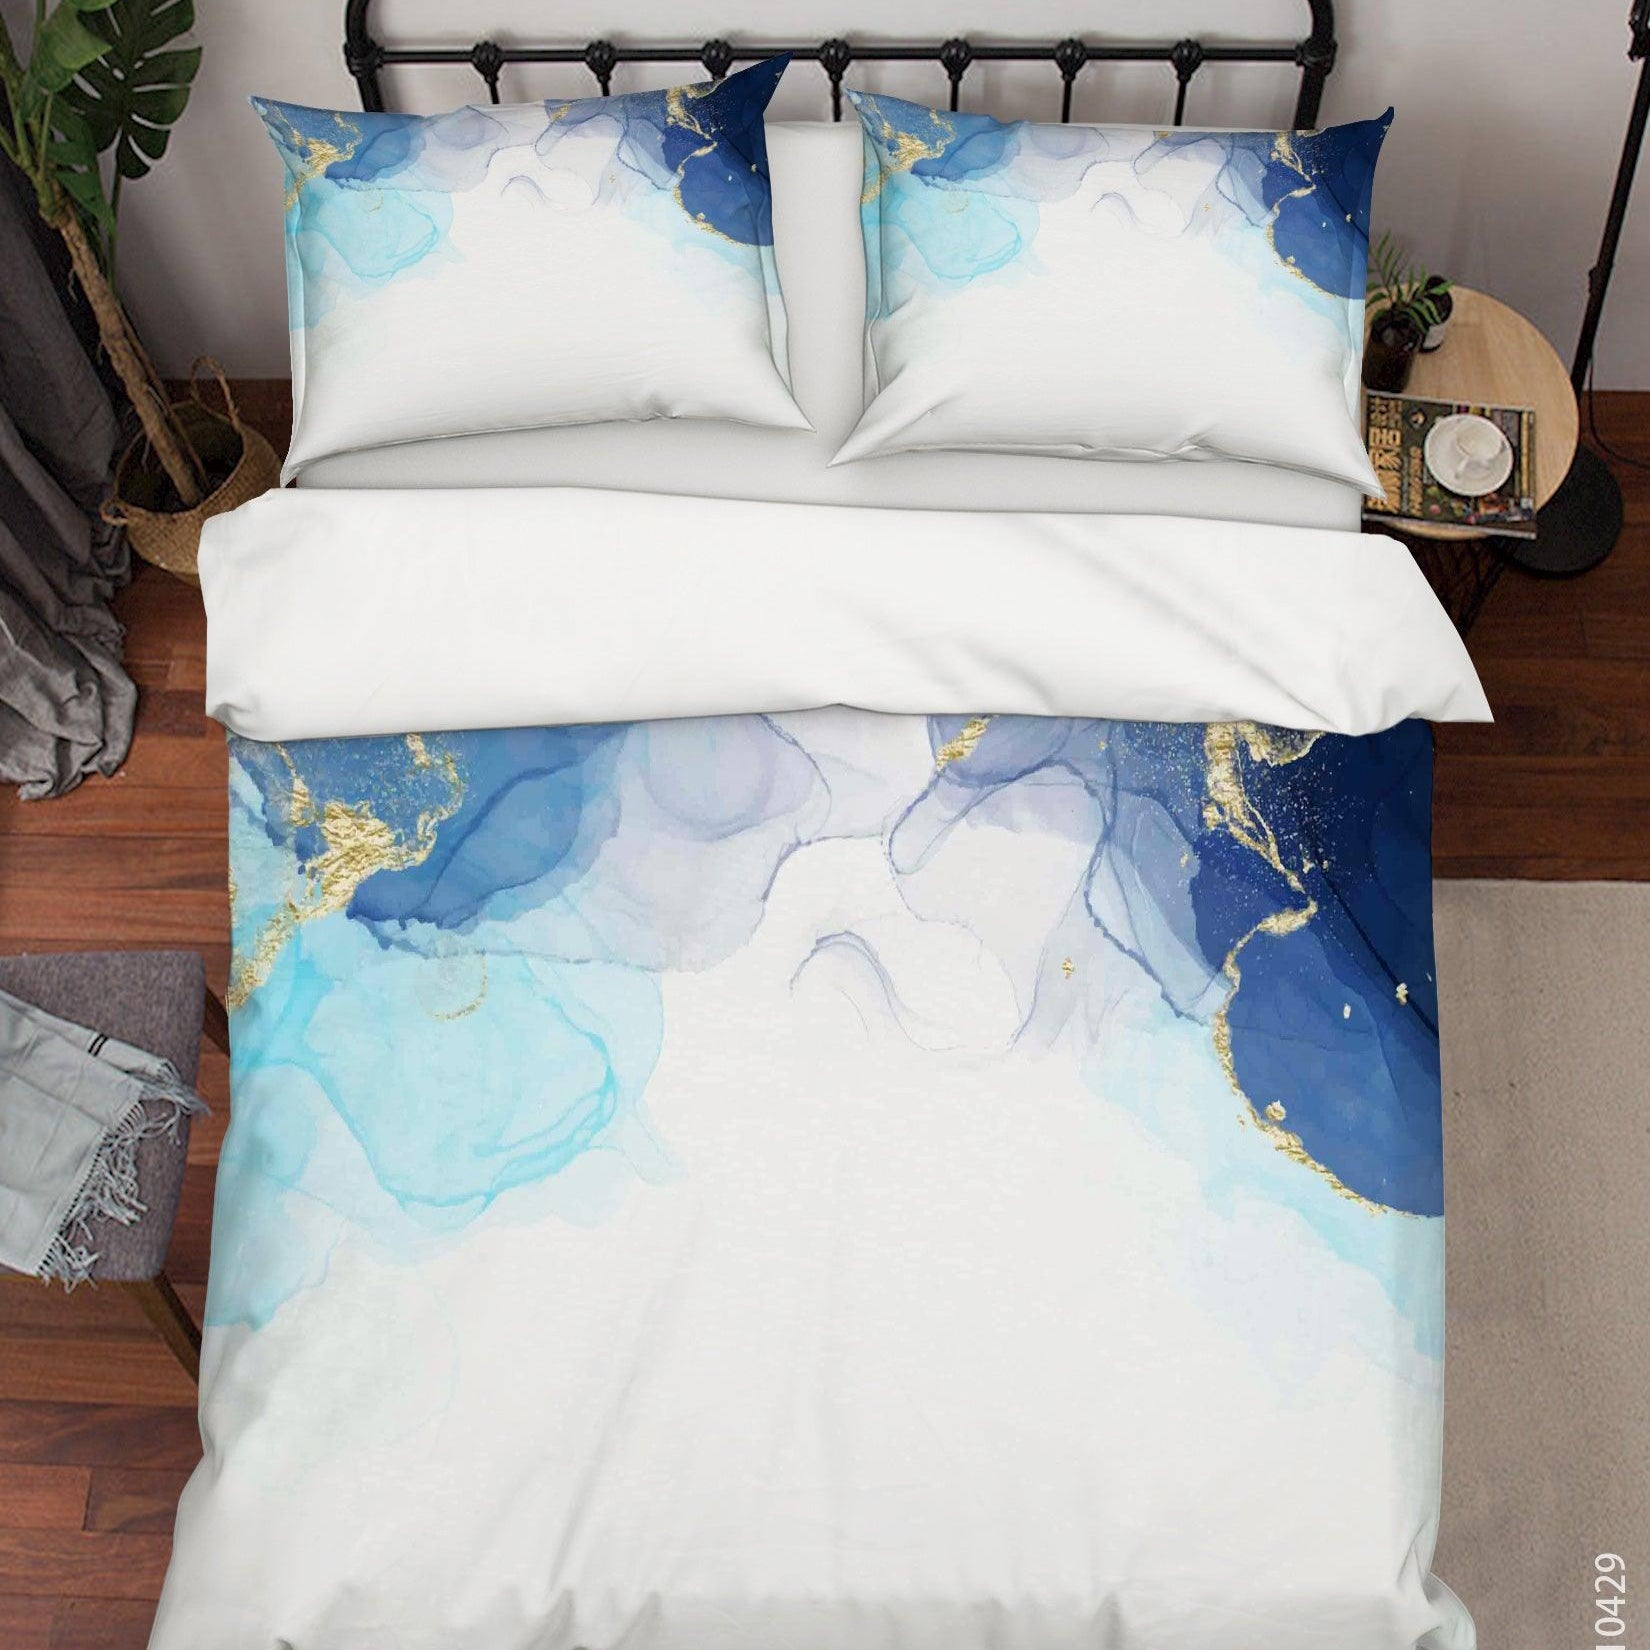 3D Watercolor Blue Marble Quilt Cover Set Bedding Set Duvet Cover Pillowcases 182- Jess Art Decoration